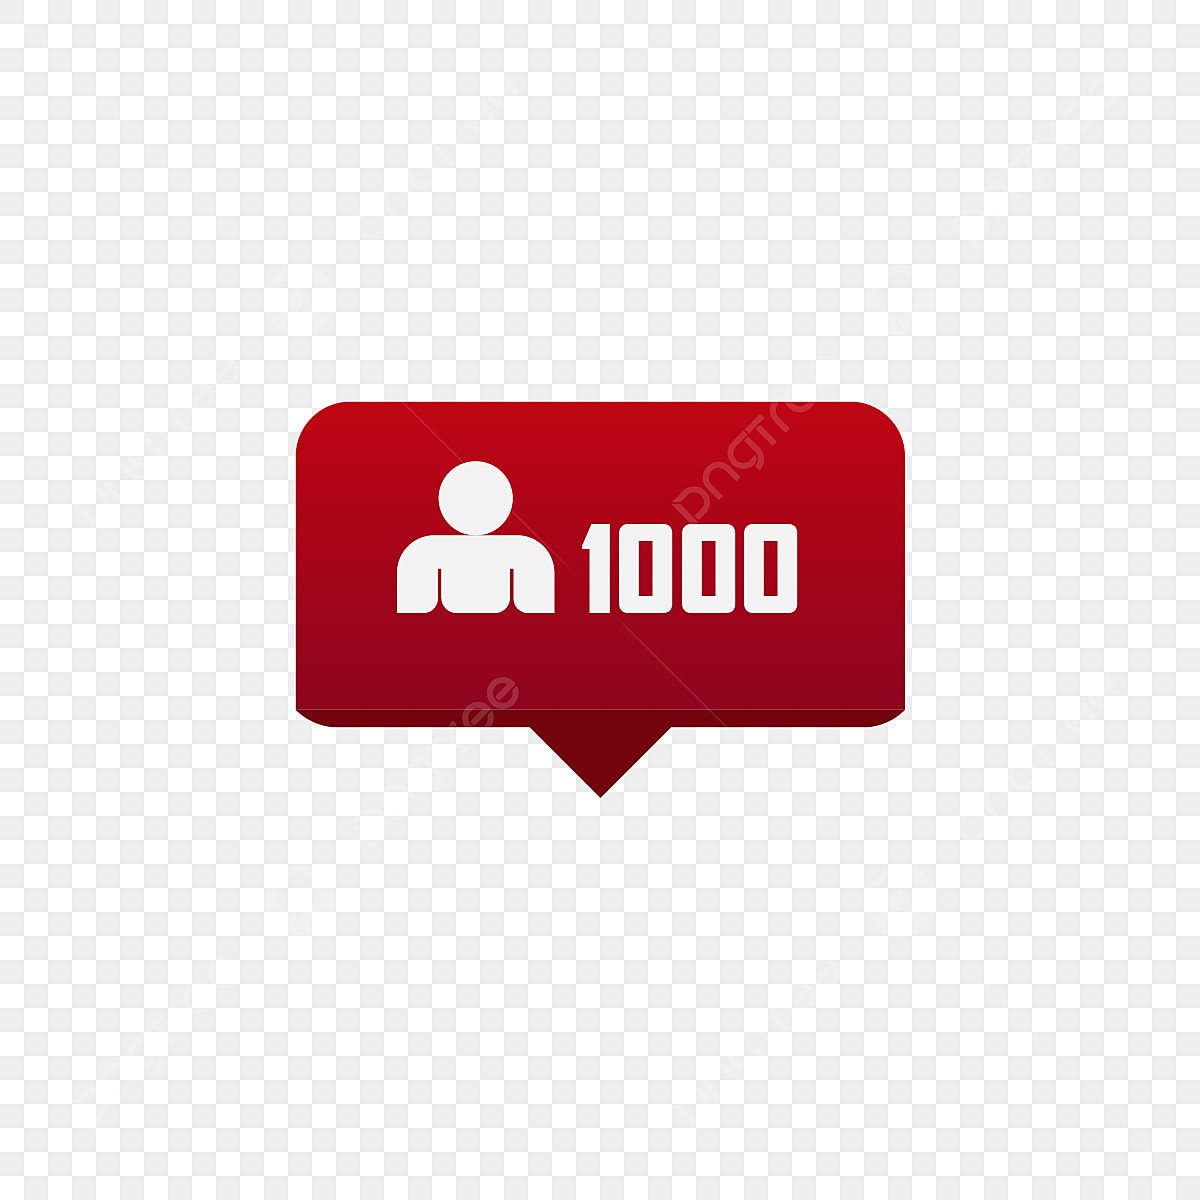 Cómo conseguir 1000 seguidores en TikTok gratis